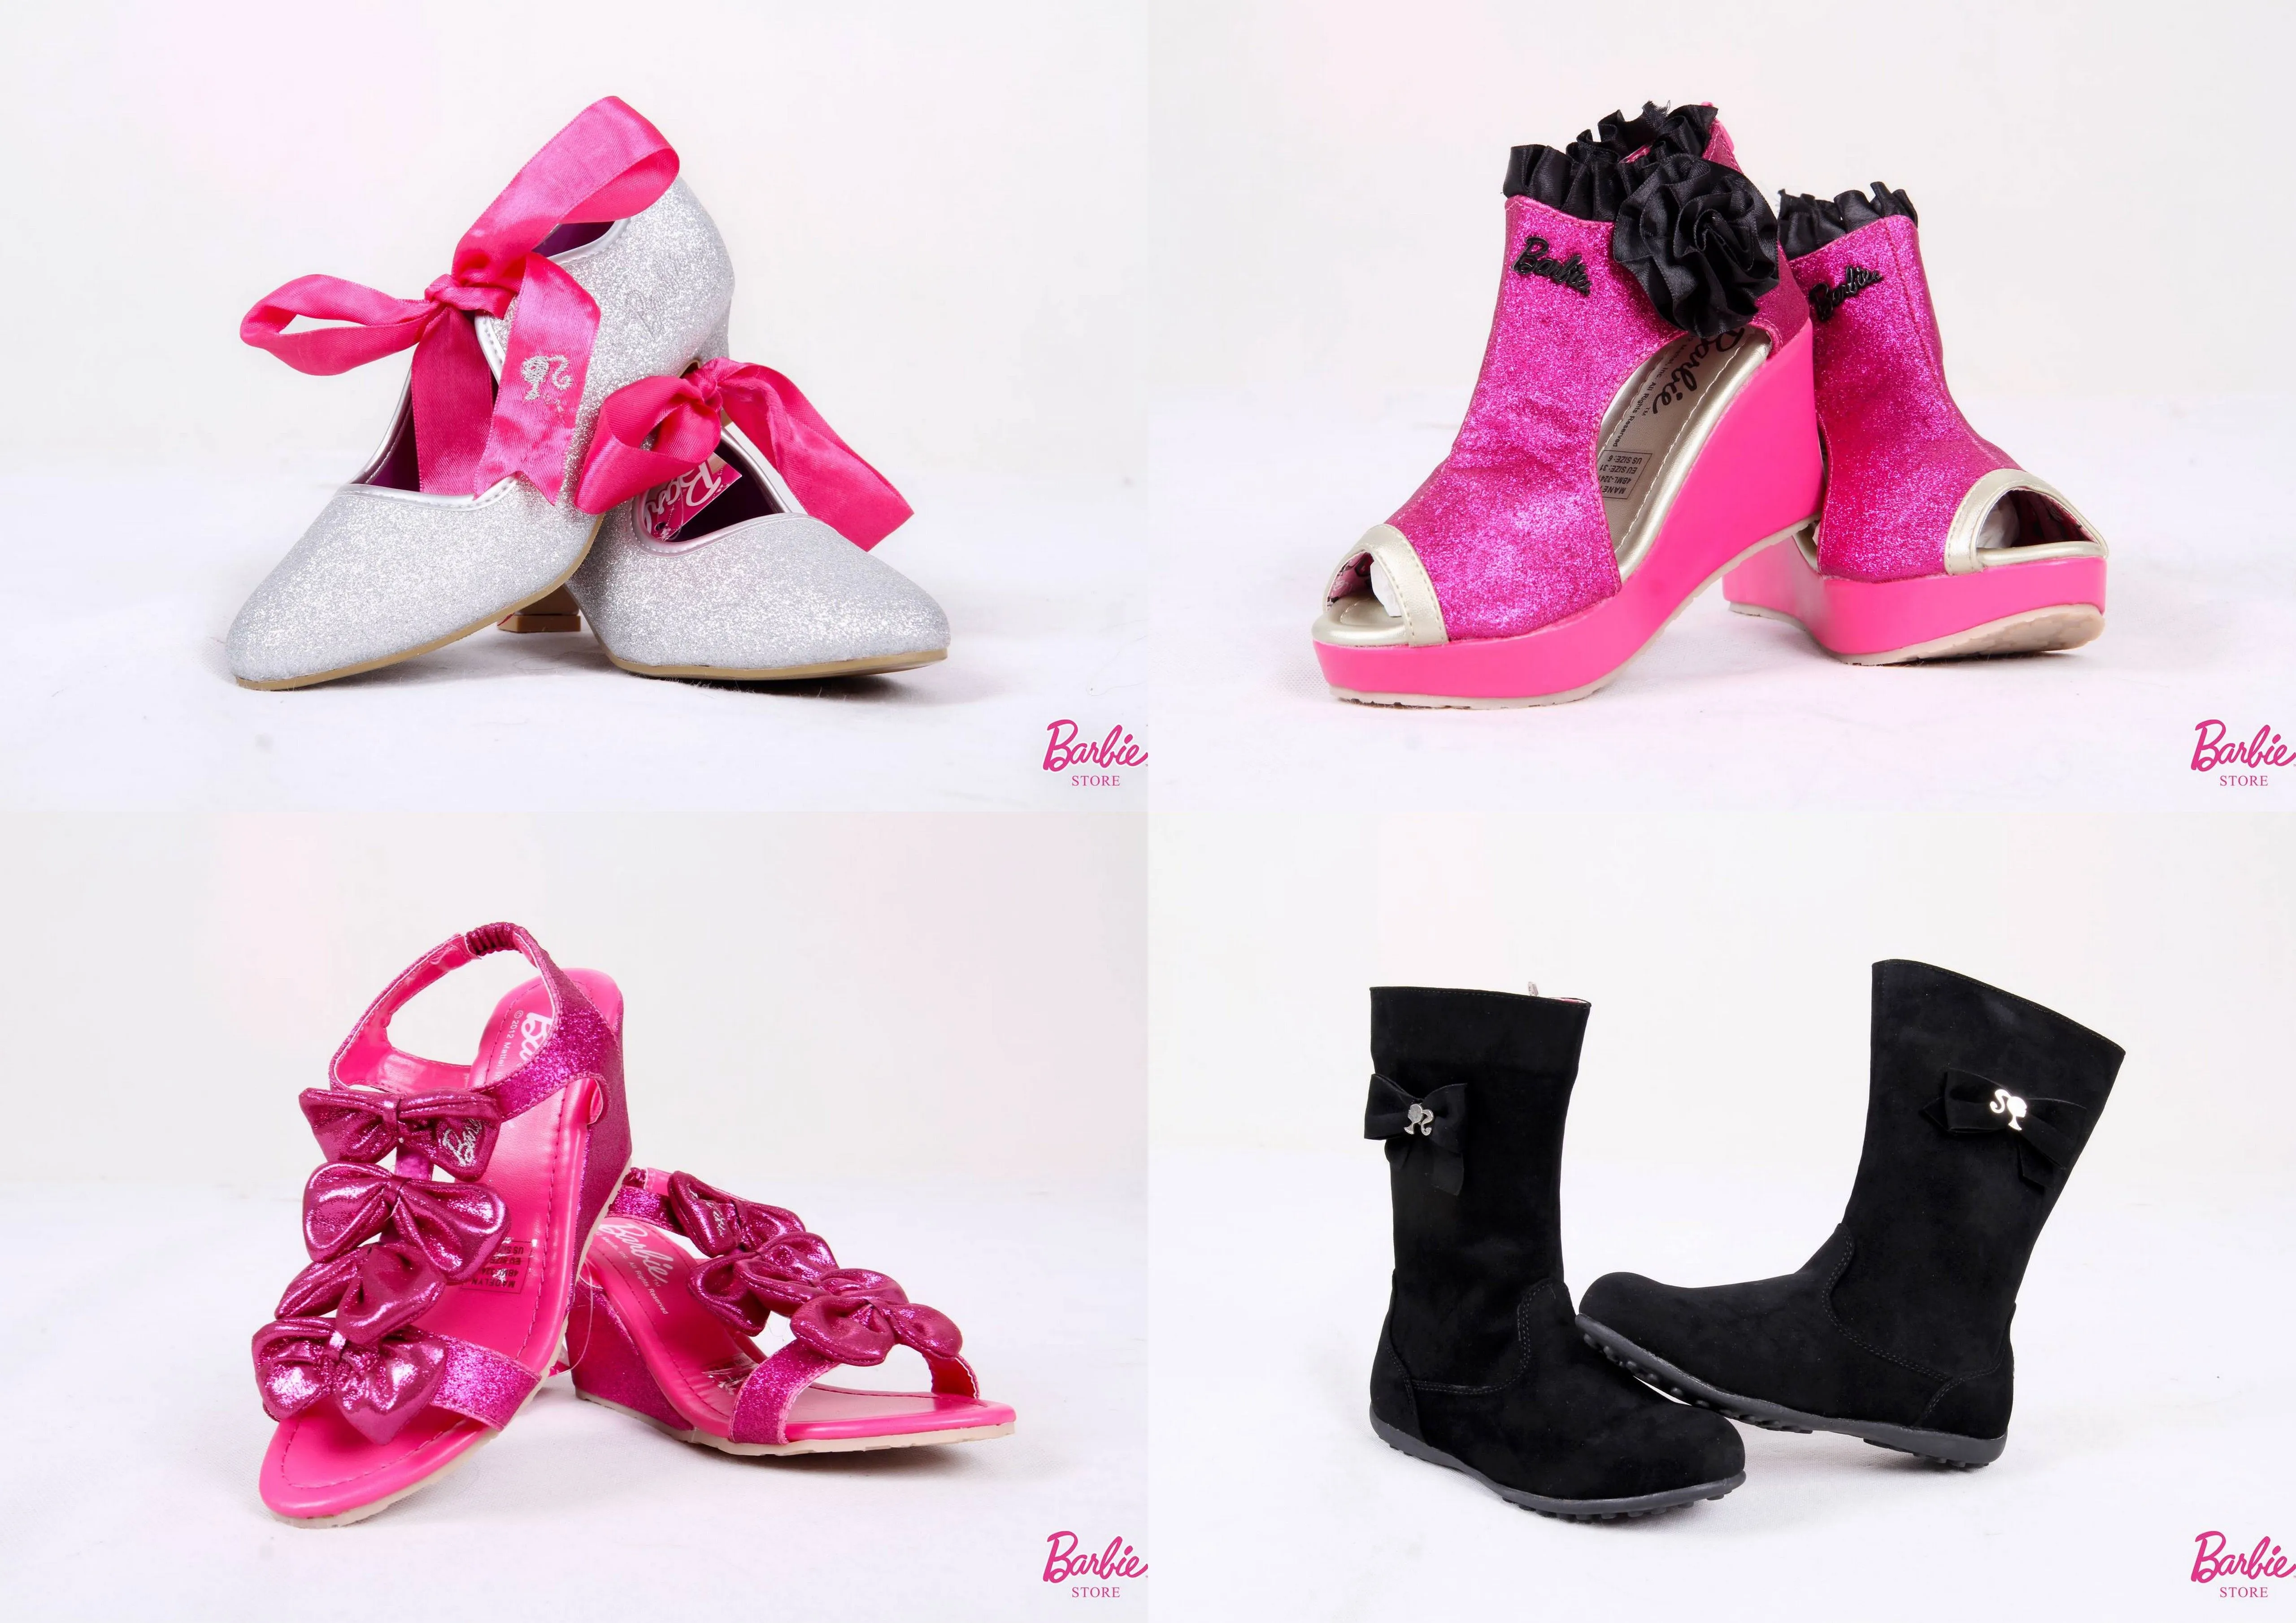 zapatos | Una vitrina llena de tesoros (Barbie blog)